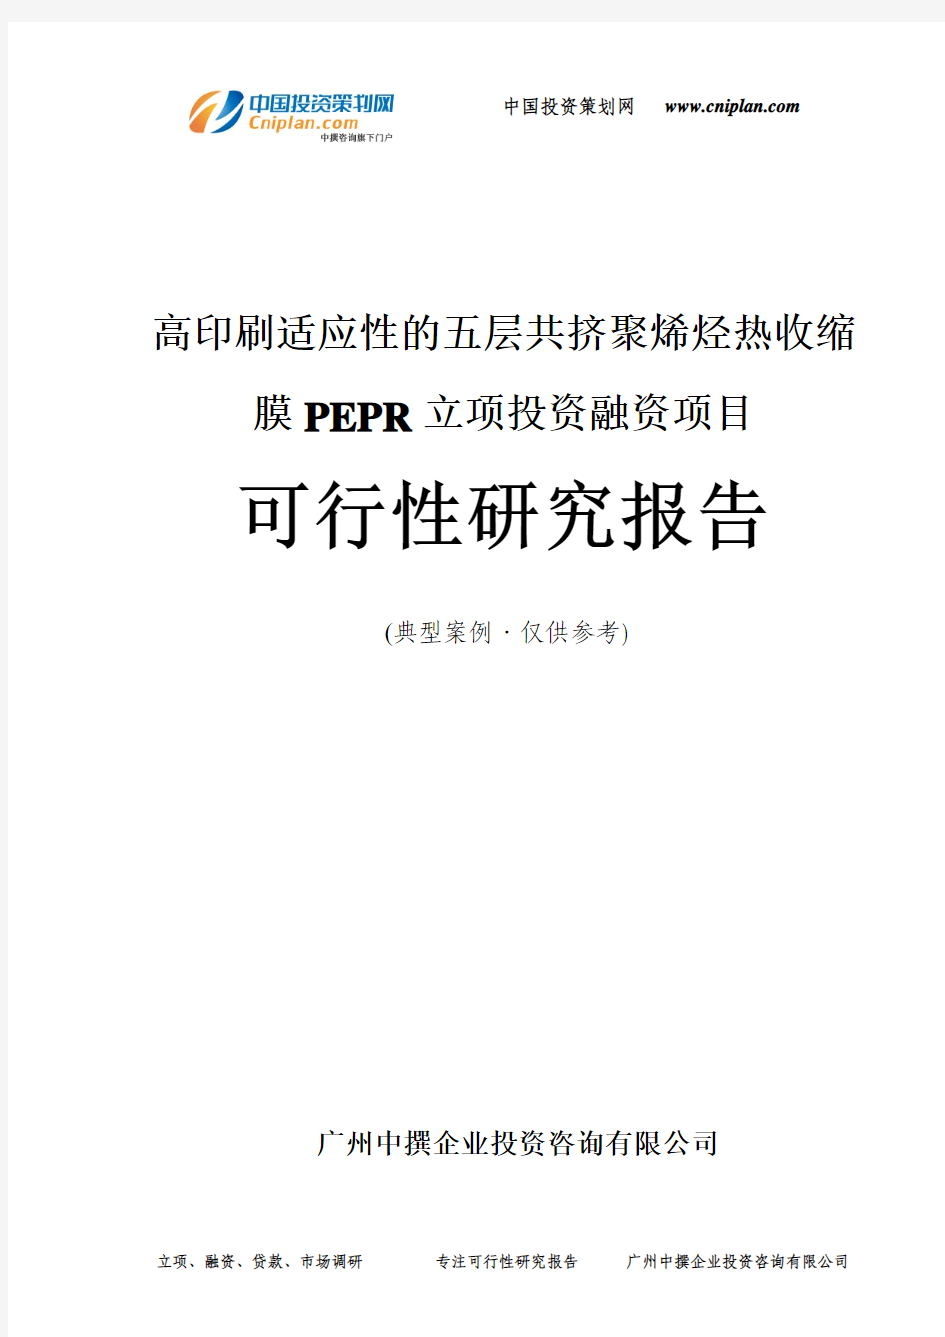 高印刷适应性的五层共挤聚烯烃热收缩膜PEPR融资投资立项项目可行性研究报告(中撰咨询)